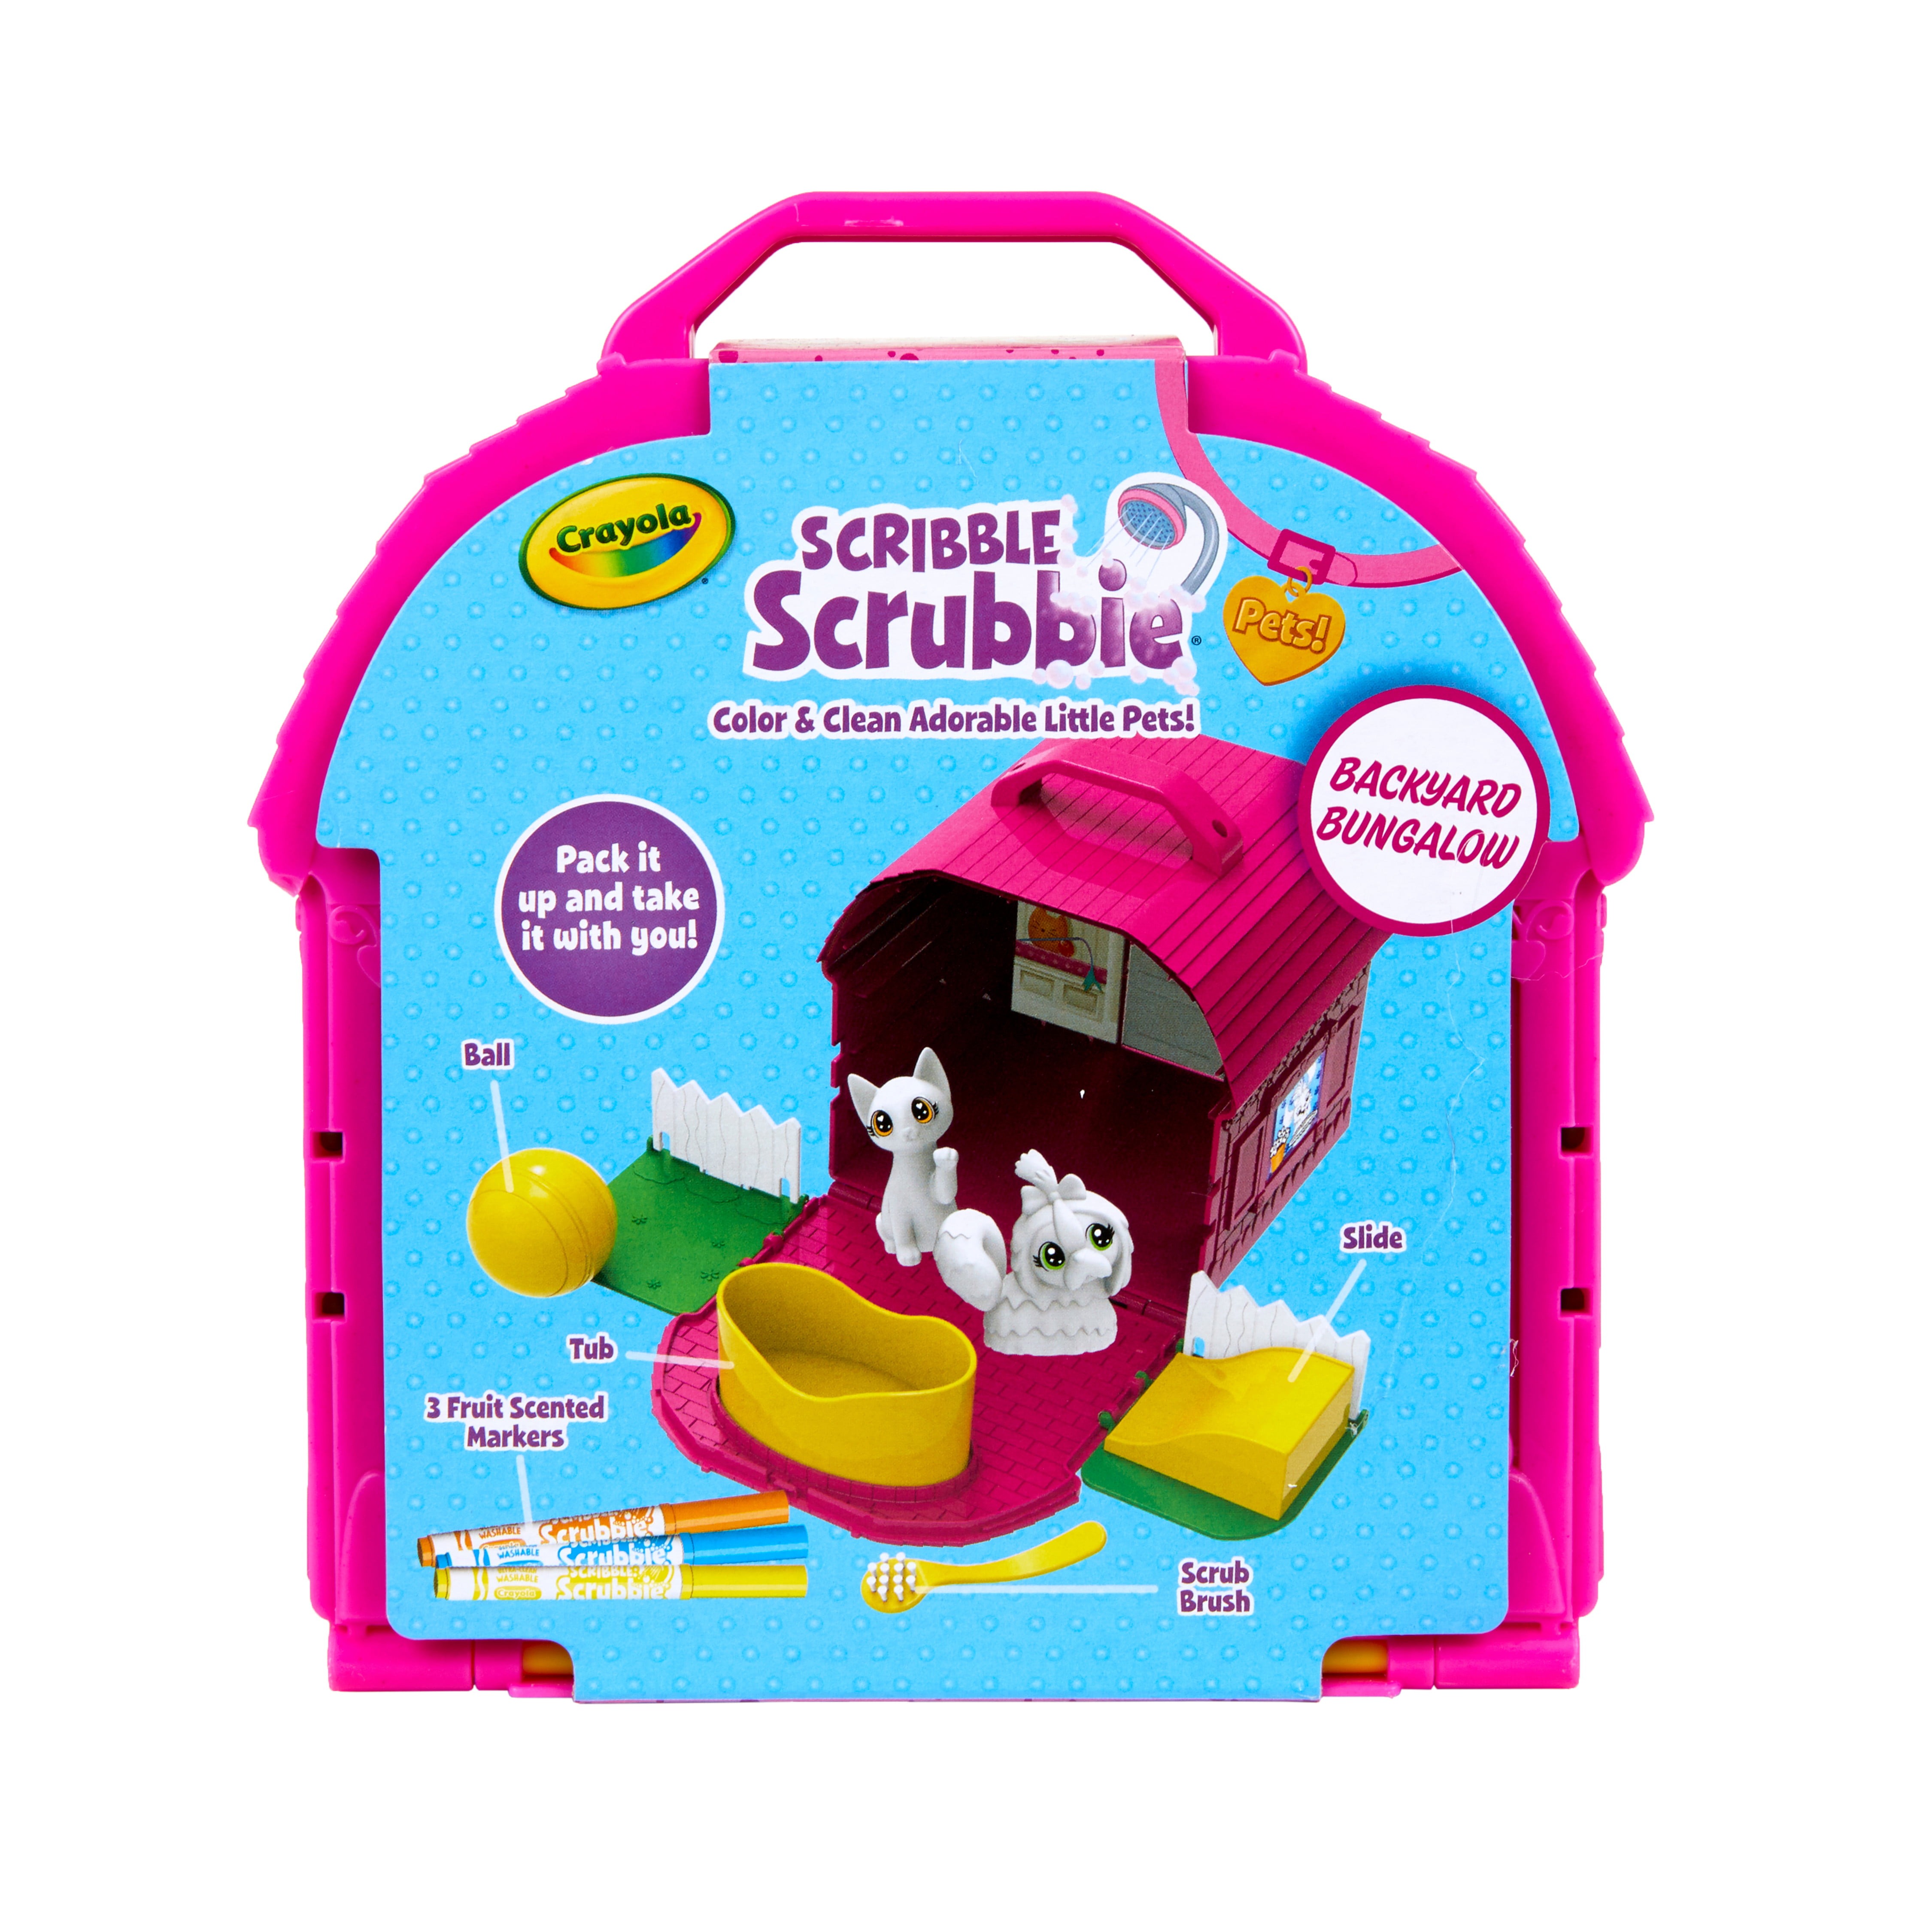 Hallmark Crayola Scribble Scrubbie Pets Backyard Bungalow Coloring Set